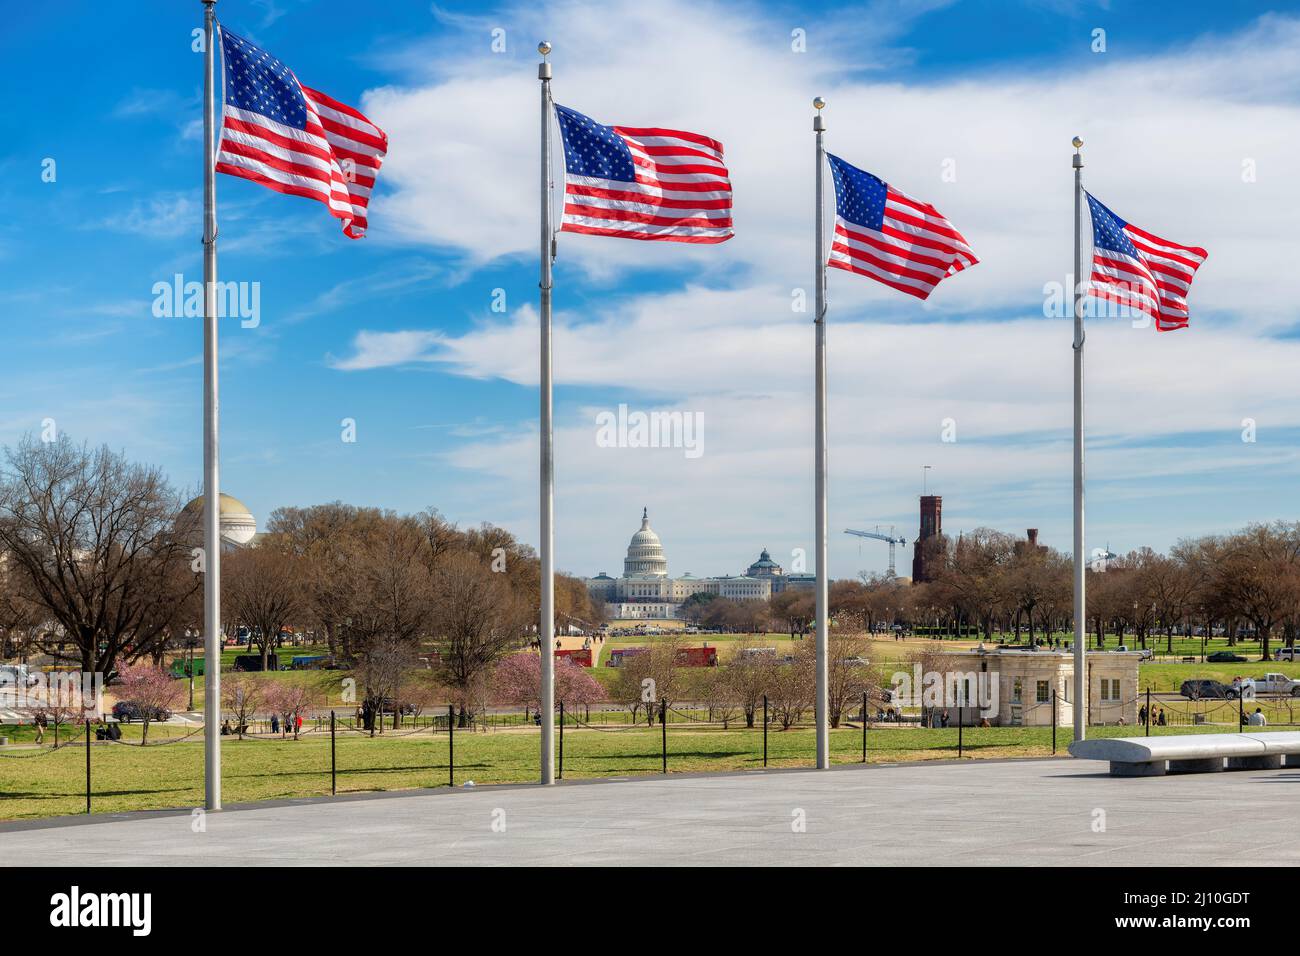 Banderas americanas en el día soleado y edificio del Capitolio en el fondo por el monumento de Washington en Washington DC, EE.UU.. Foto de stock